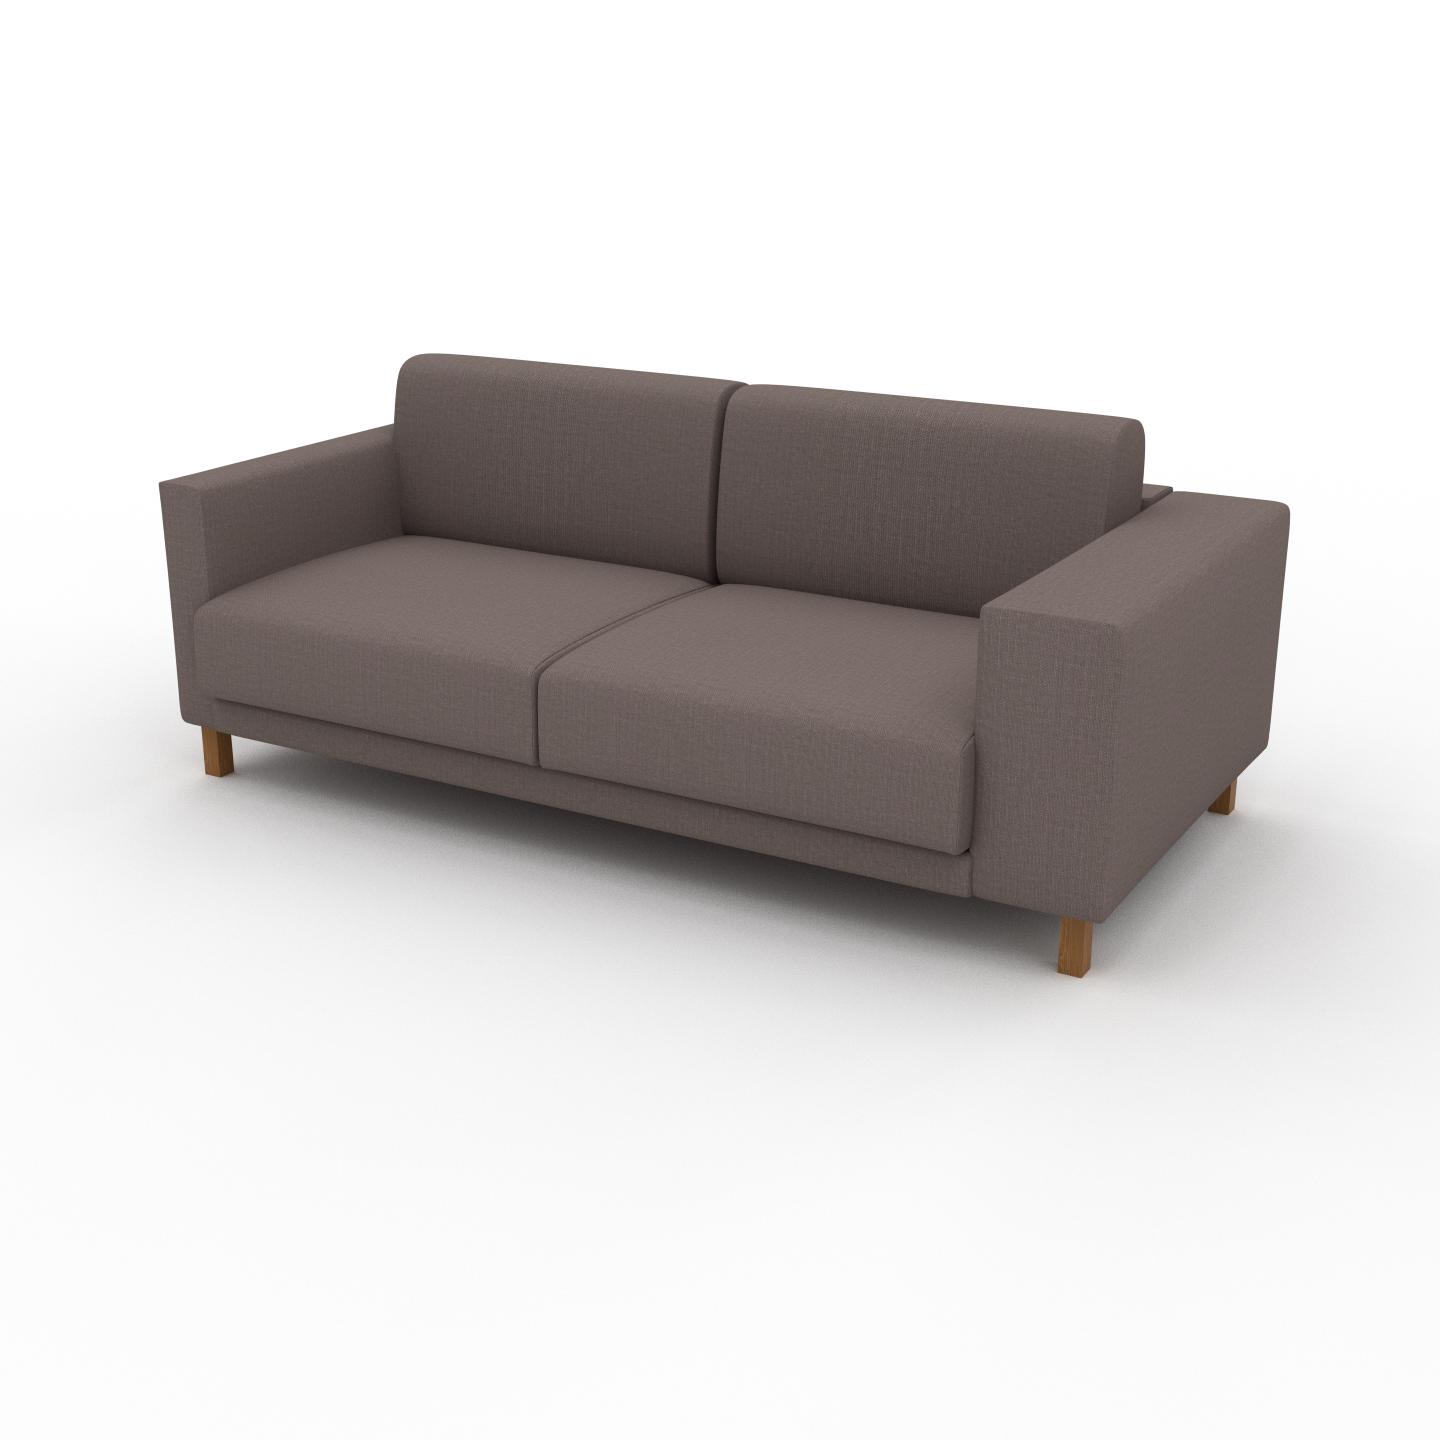 MYCS Sofa 2-Sitzer Taupegrau Webstoff - Elegantes, gemütliches 2-Sitzer Sofa: Hochwertige Qualität, einzigartiges Design - 196 x 75 x 98 cm, konfigurierbar